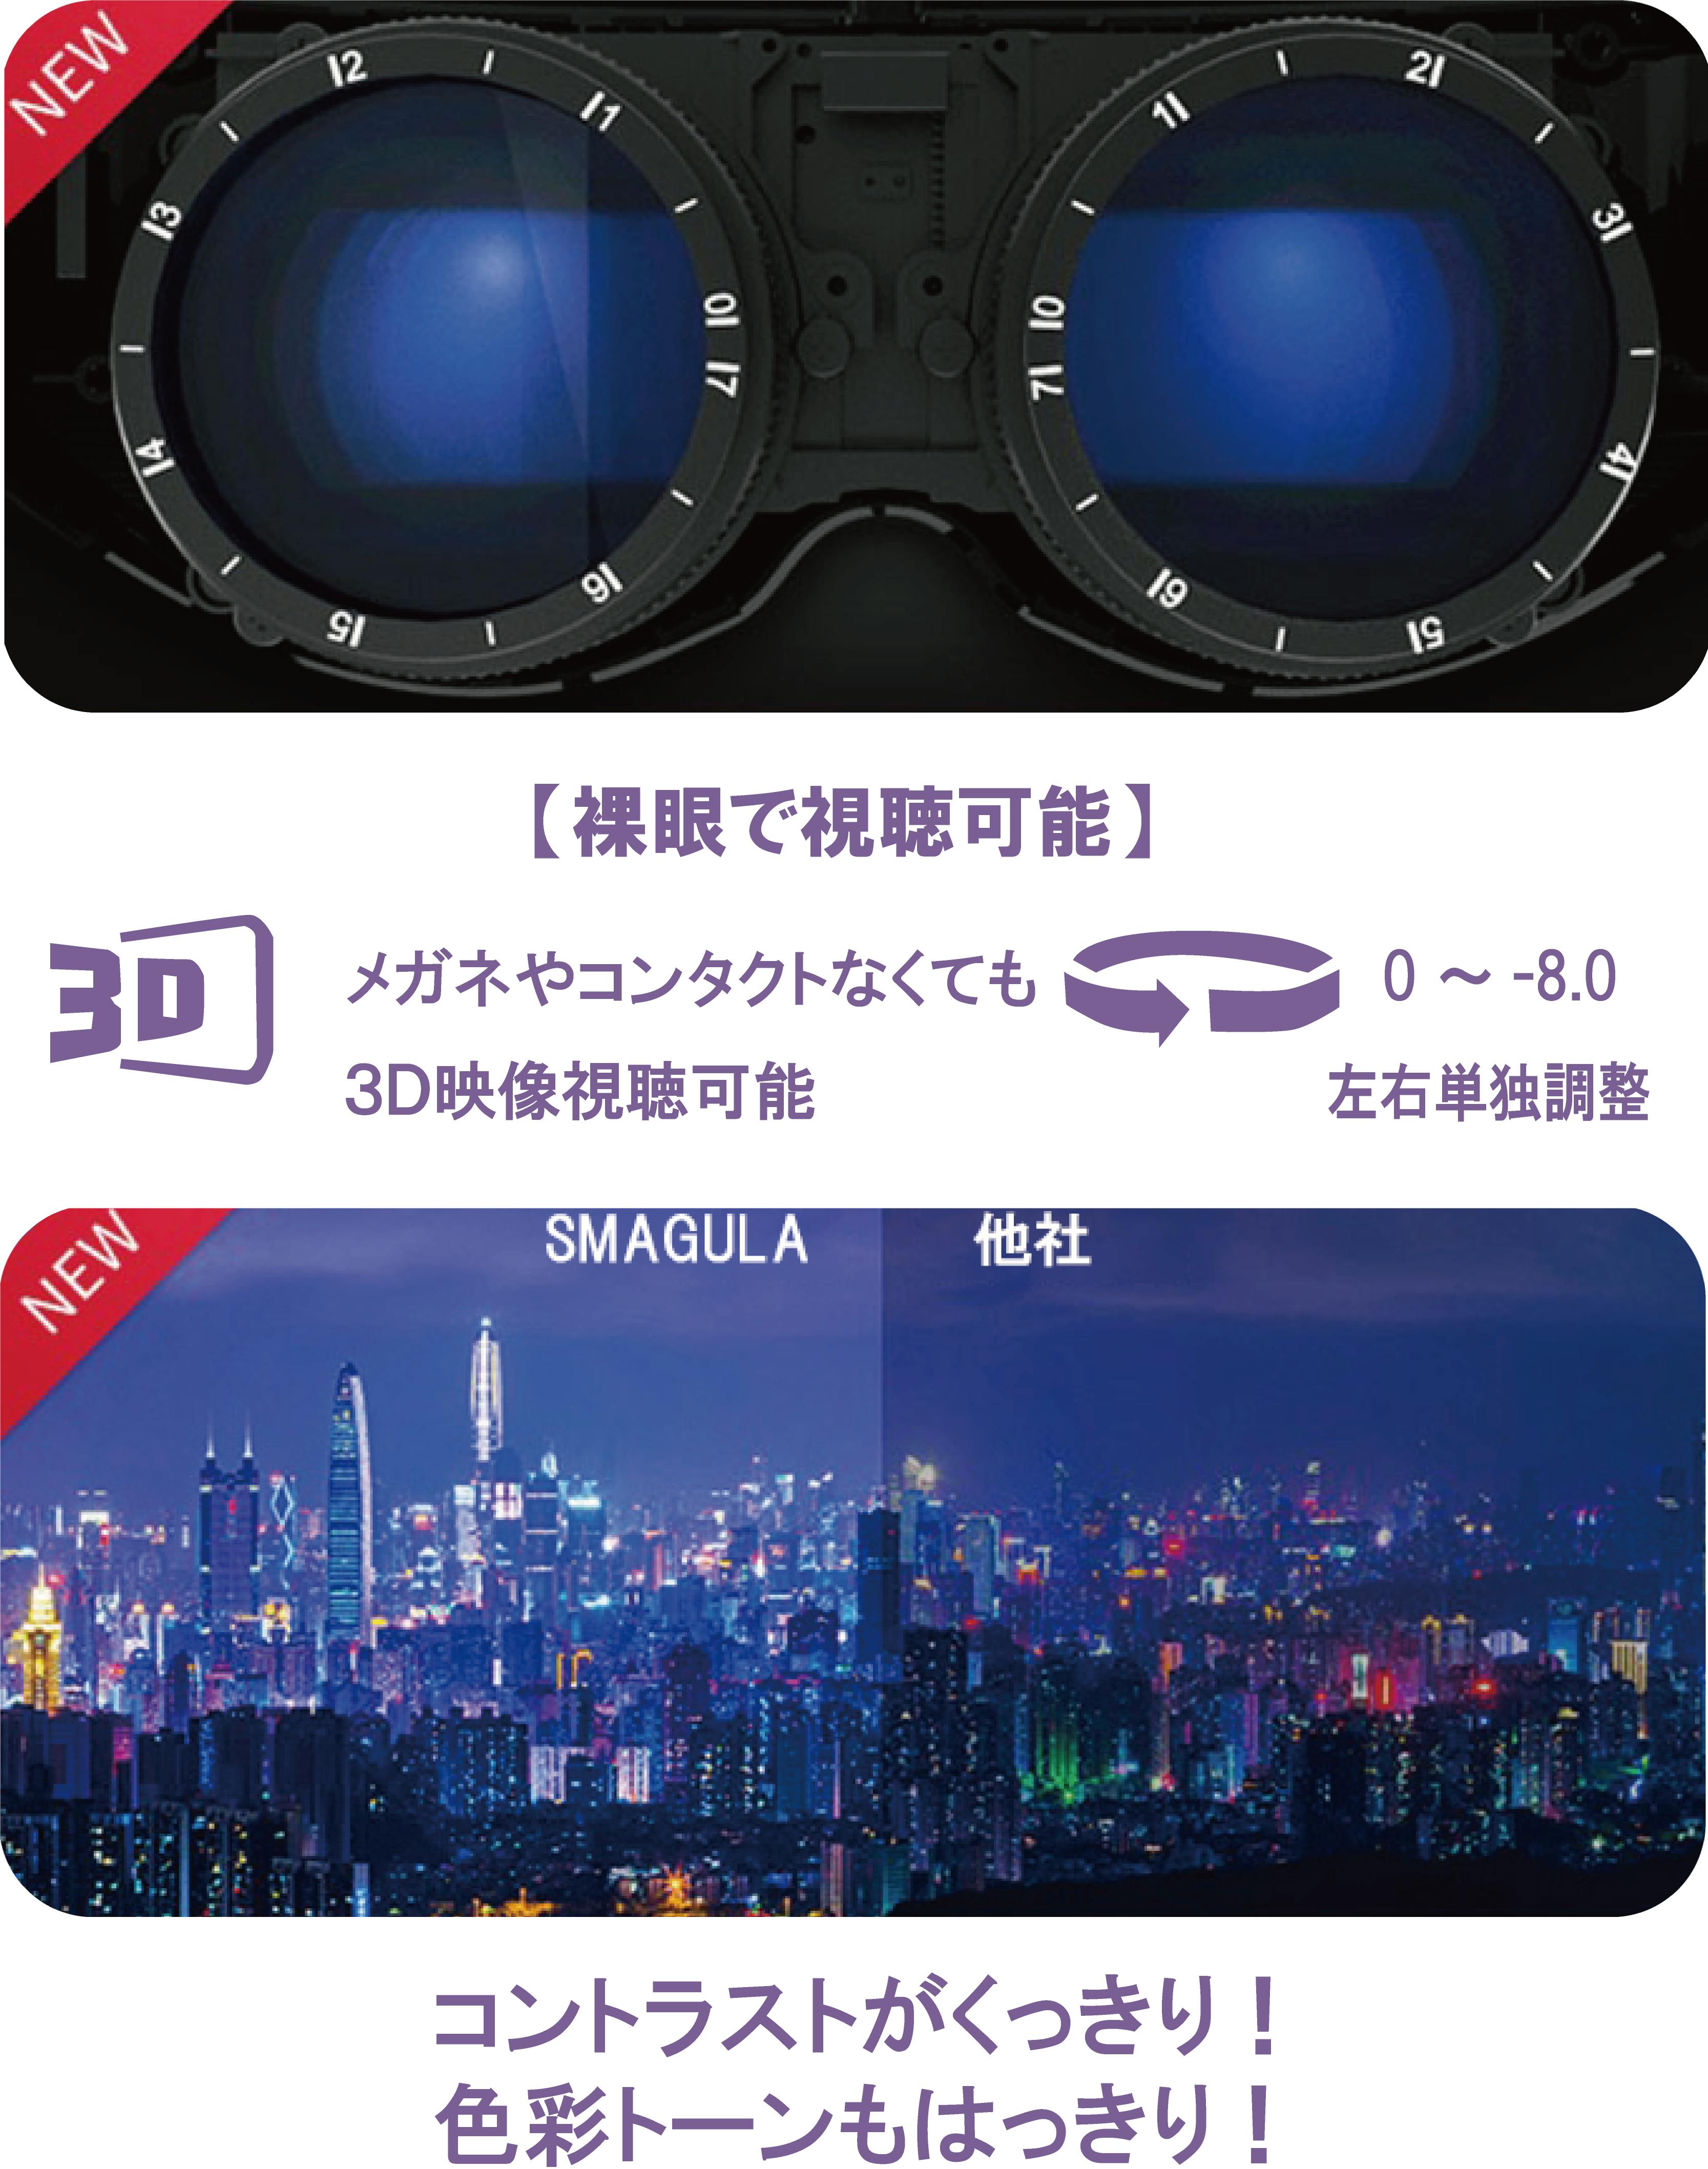 新品日本製ENMESI エンメス 3Dヘッド マウントディスプレイ VR ゴーグル その他